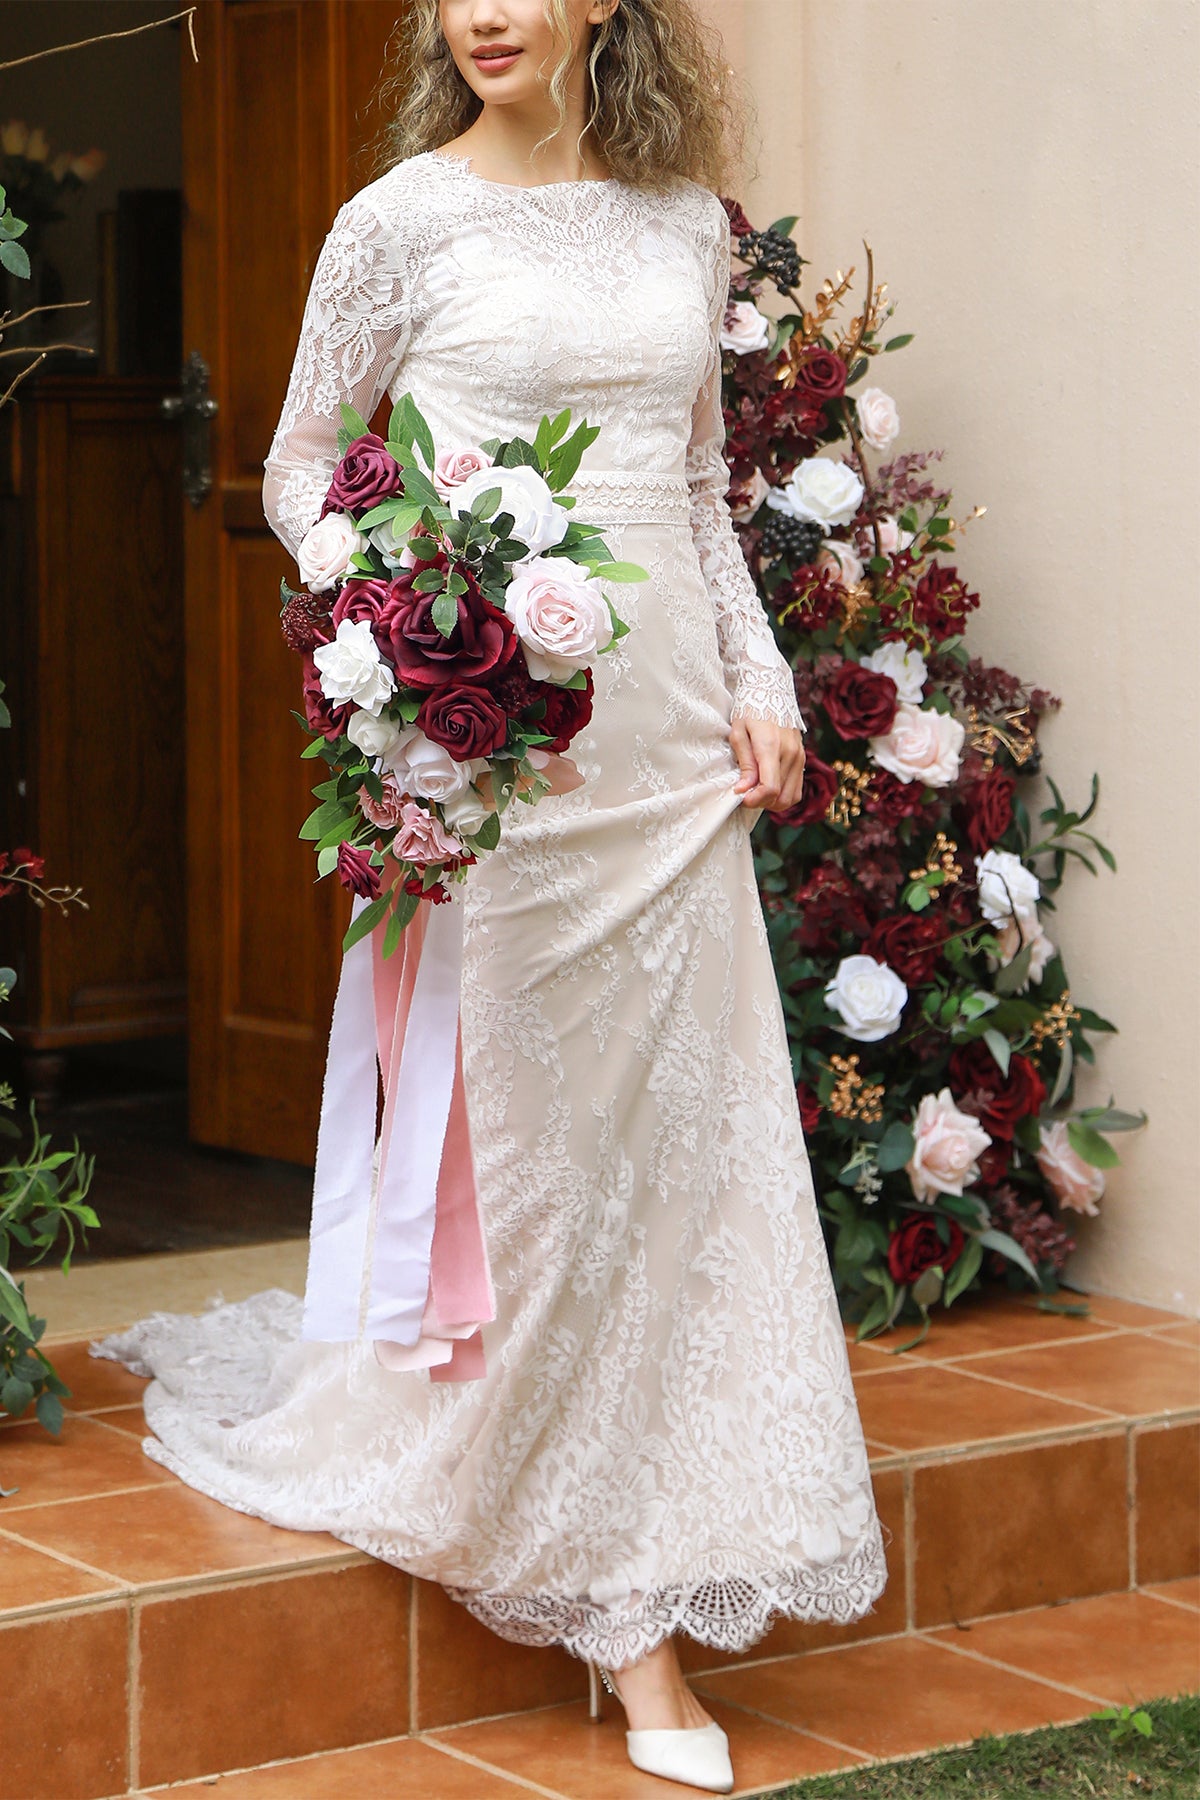 Small Cascade Bridal Bouquet in Romantic Marsala